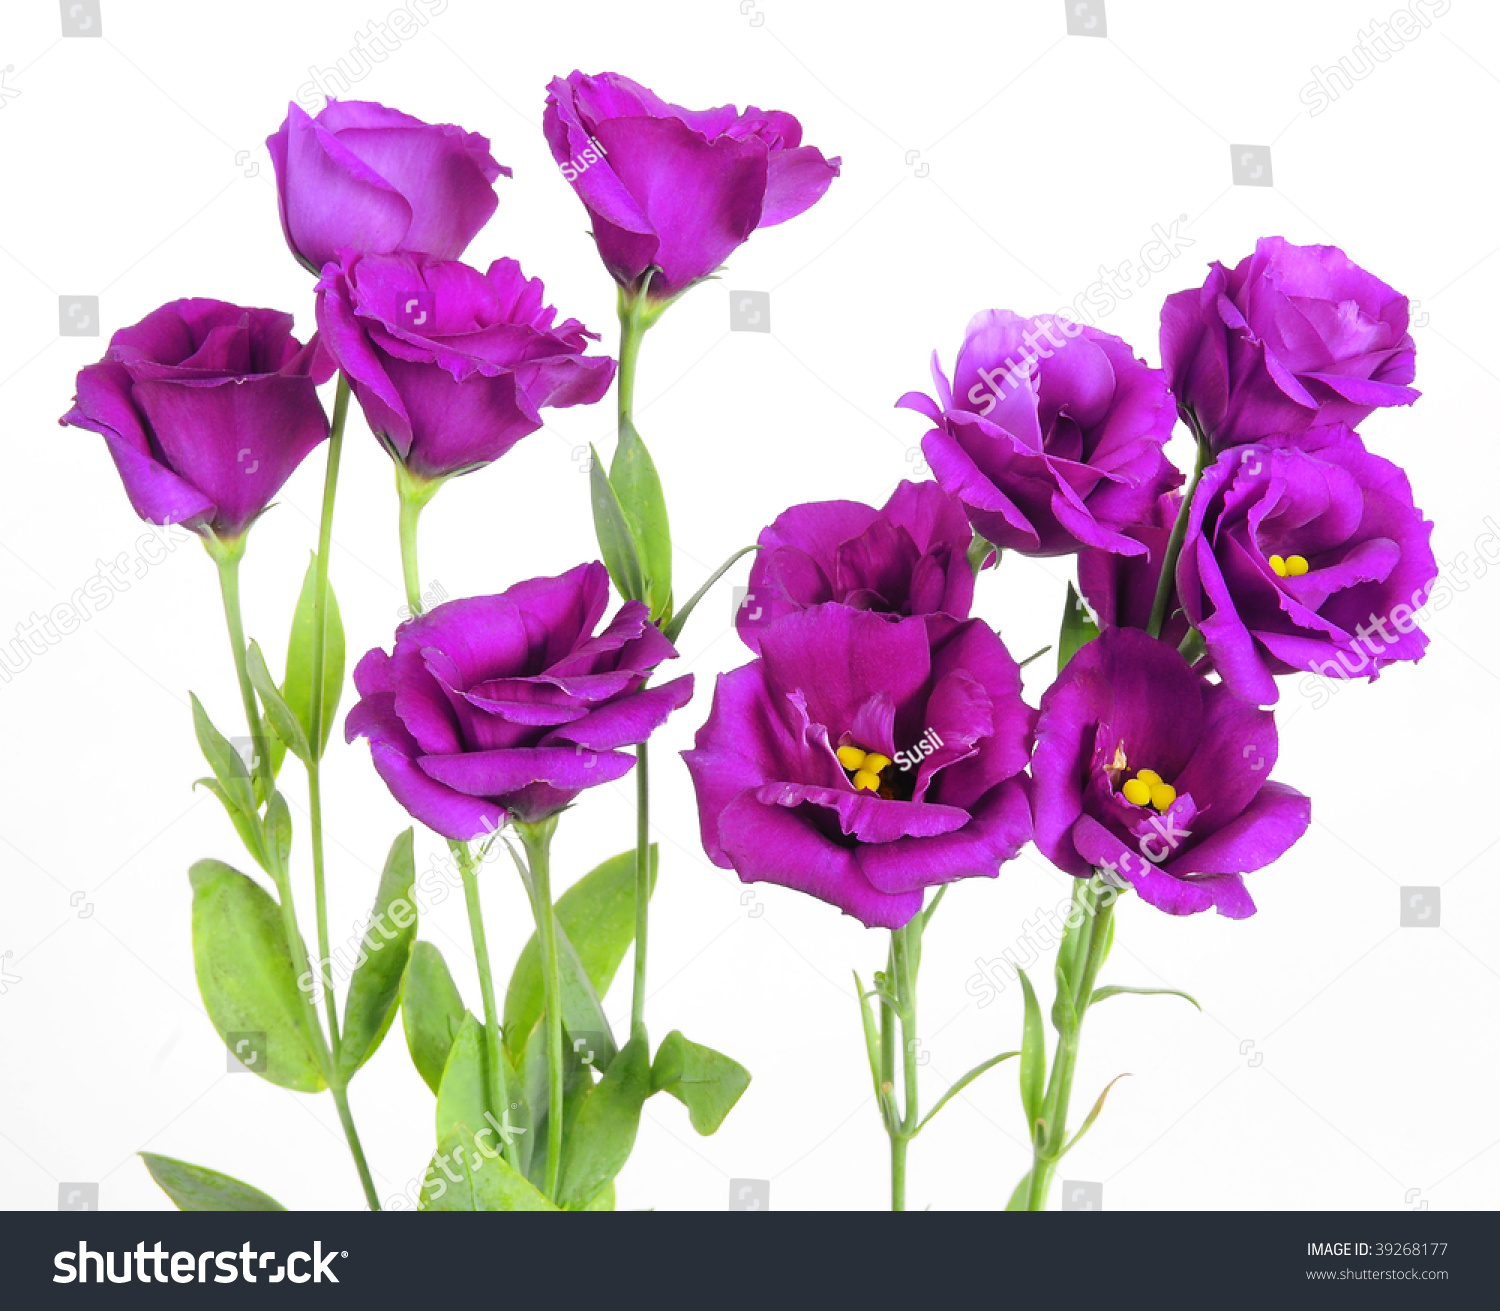 Purple Flower Stock Photo 39268177 : Shutterstock